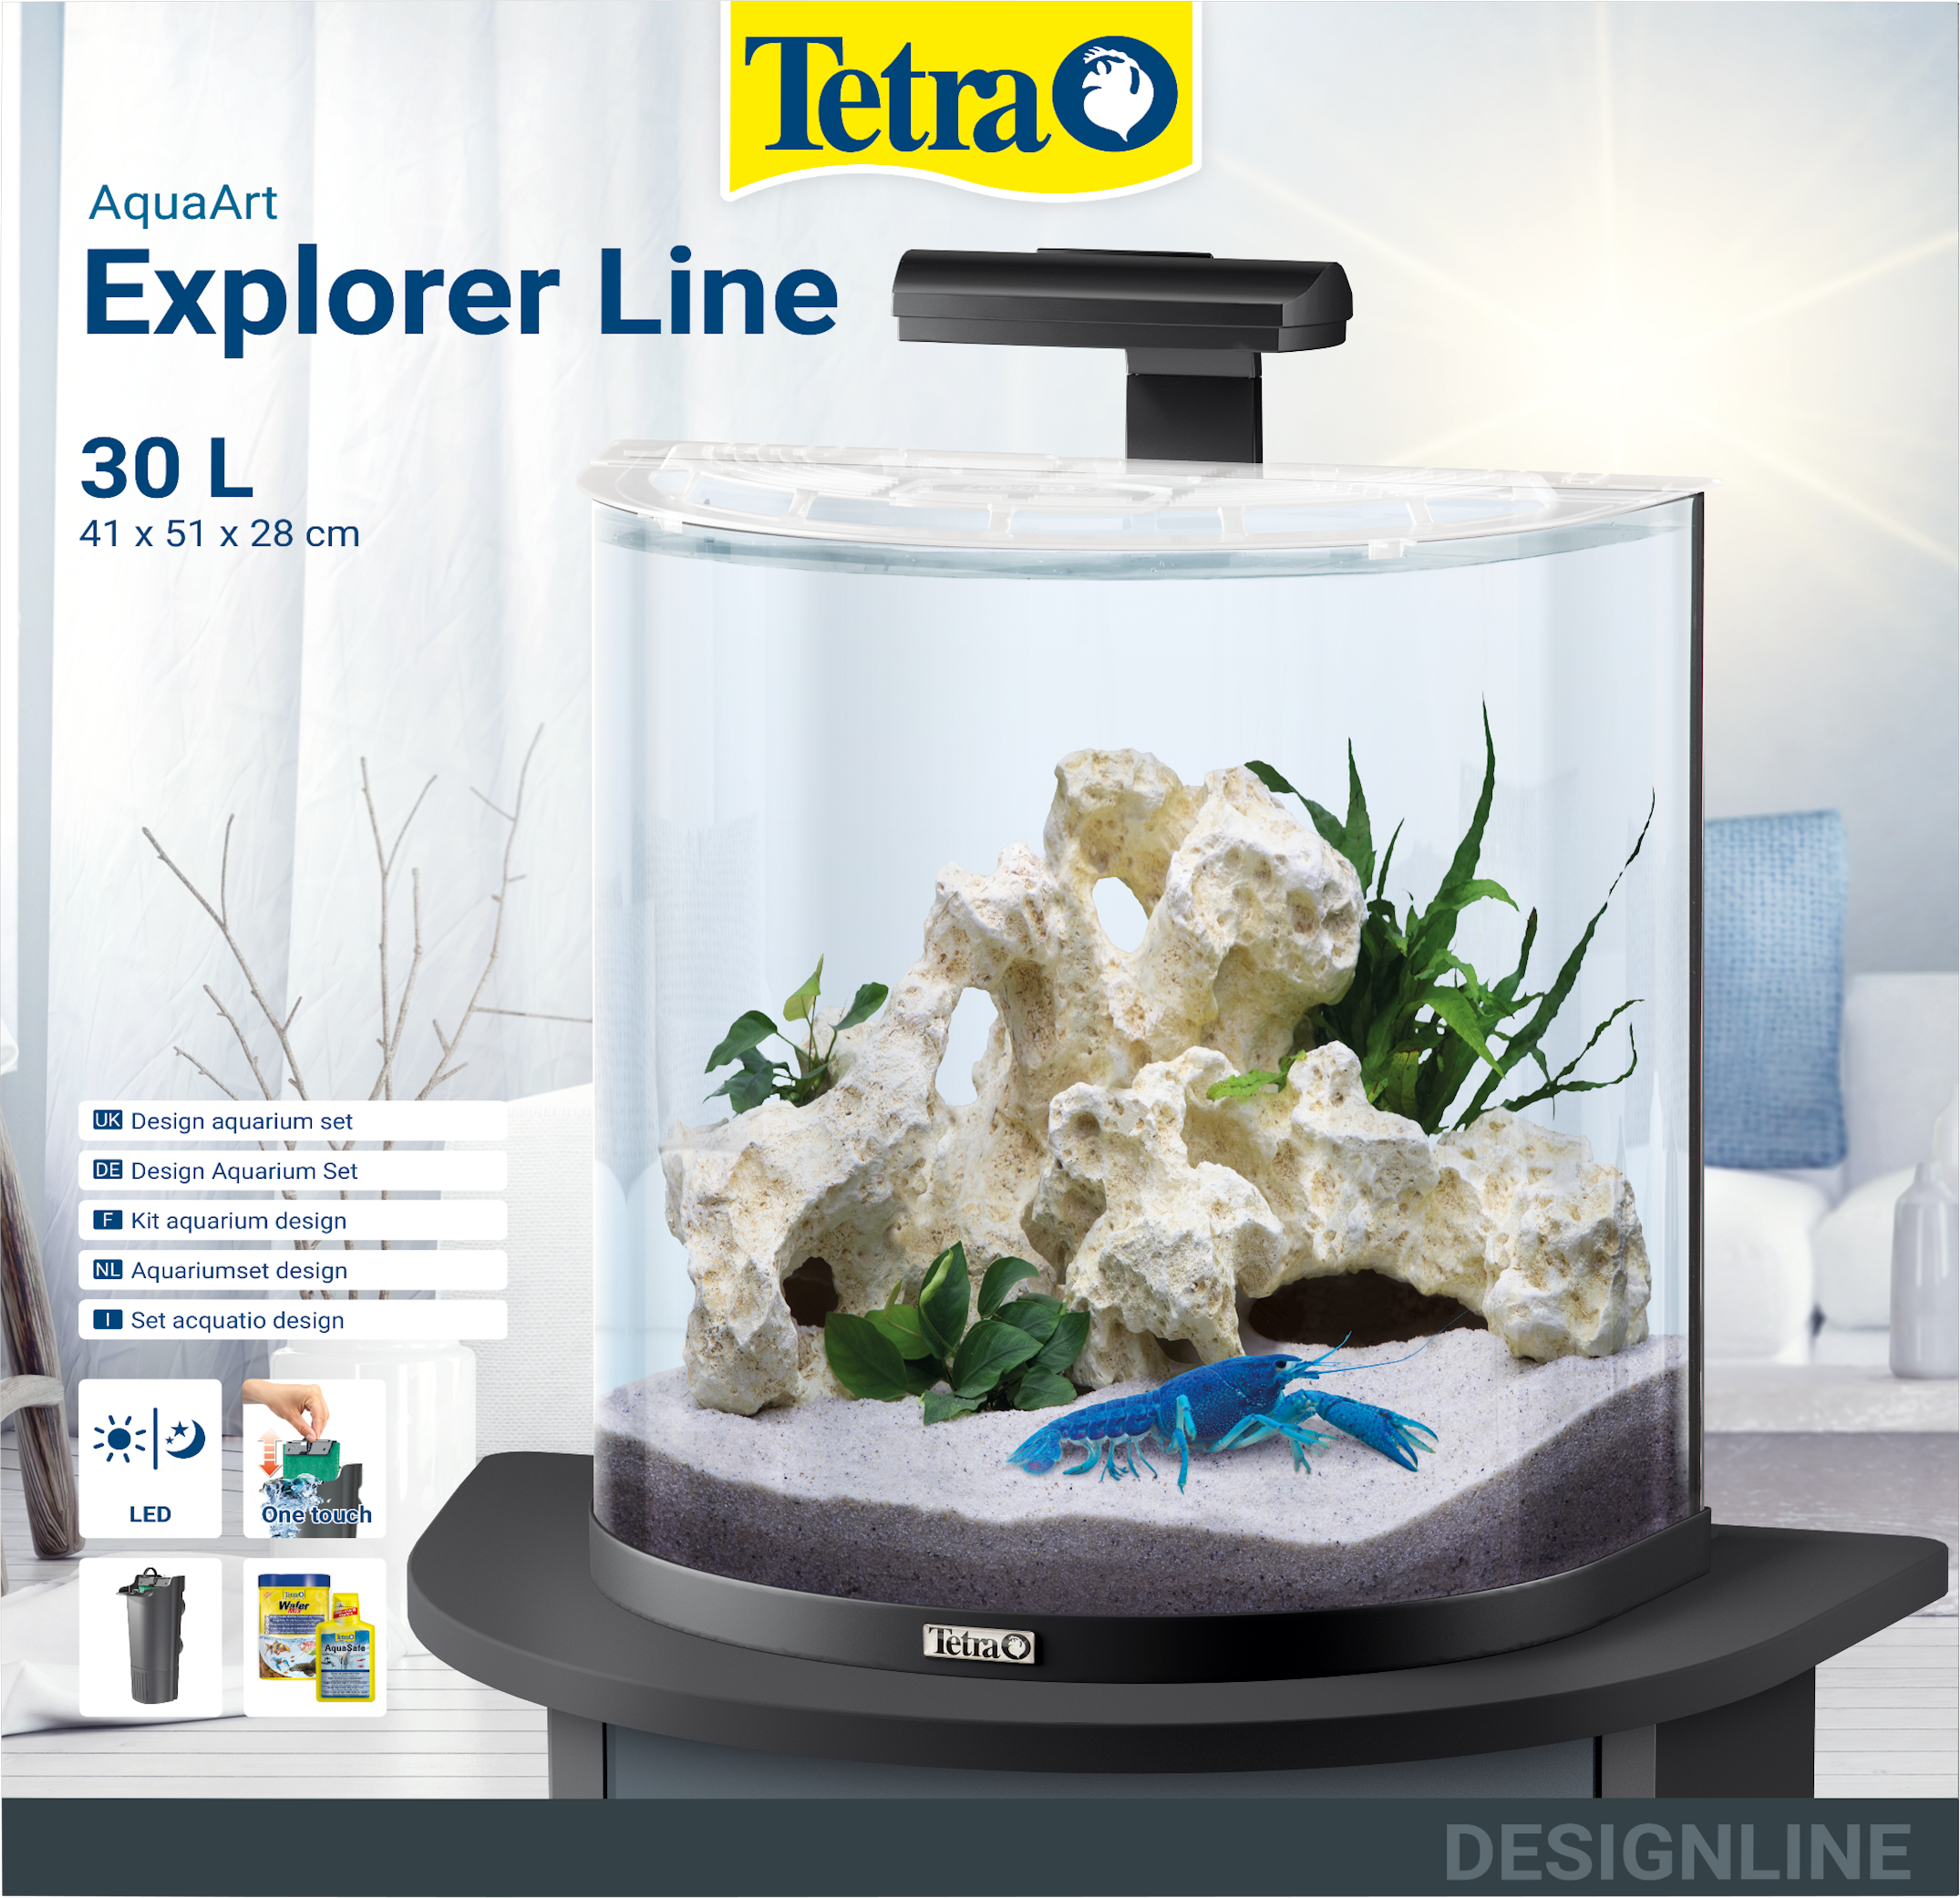 LED set Line Tetra aquarium - Crayfish: 30L Explorer AquaArt Tetra